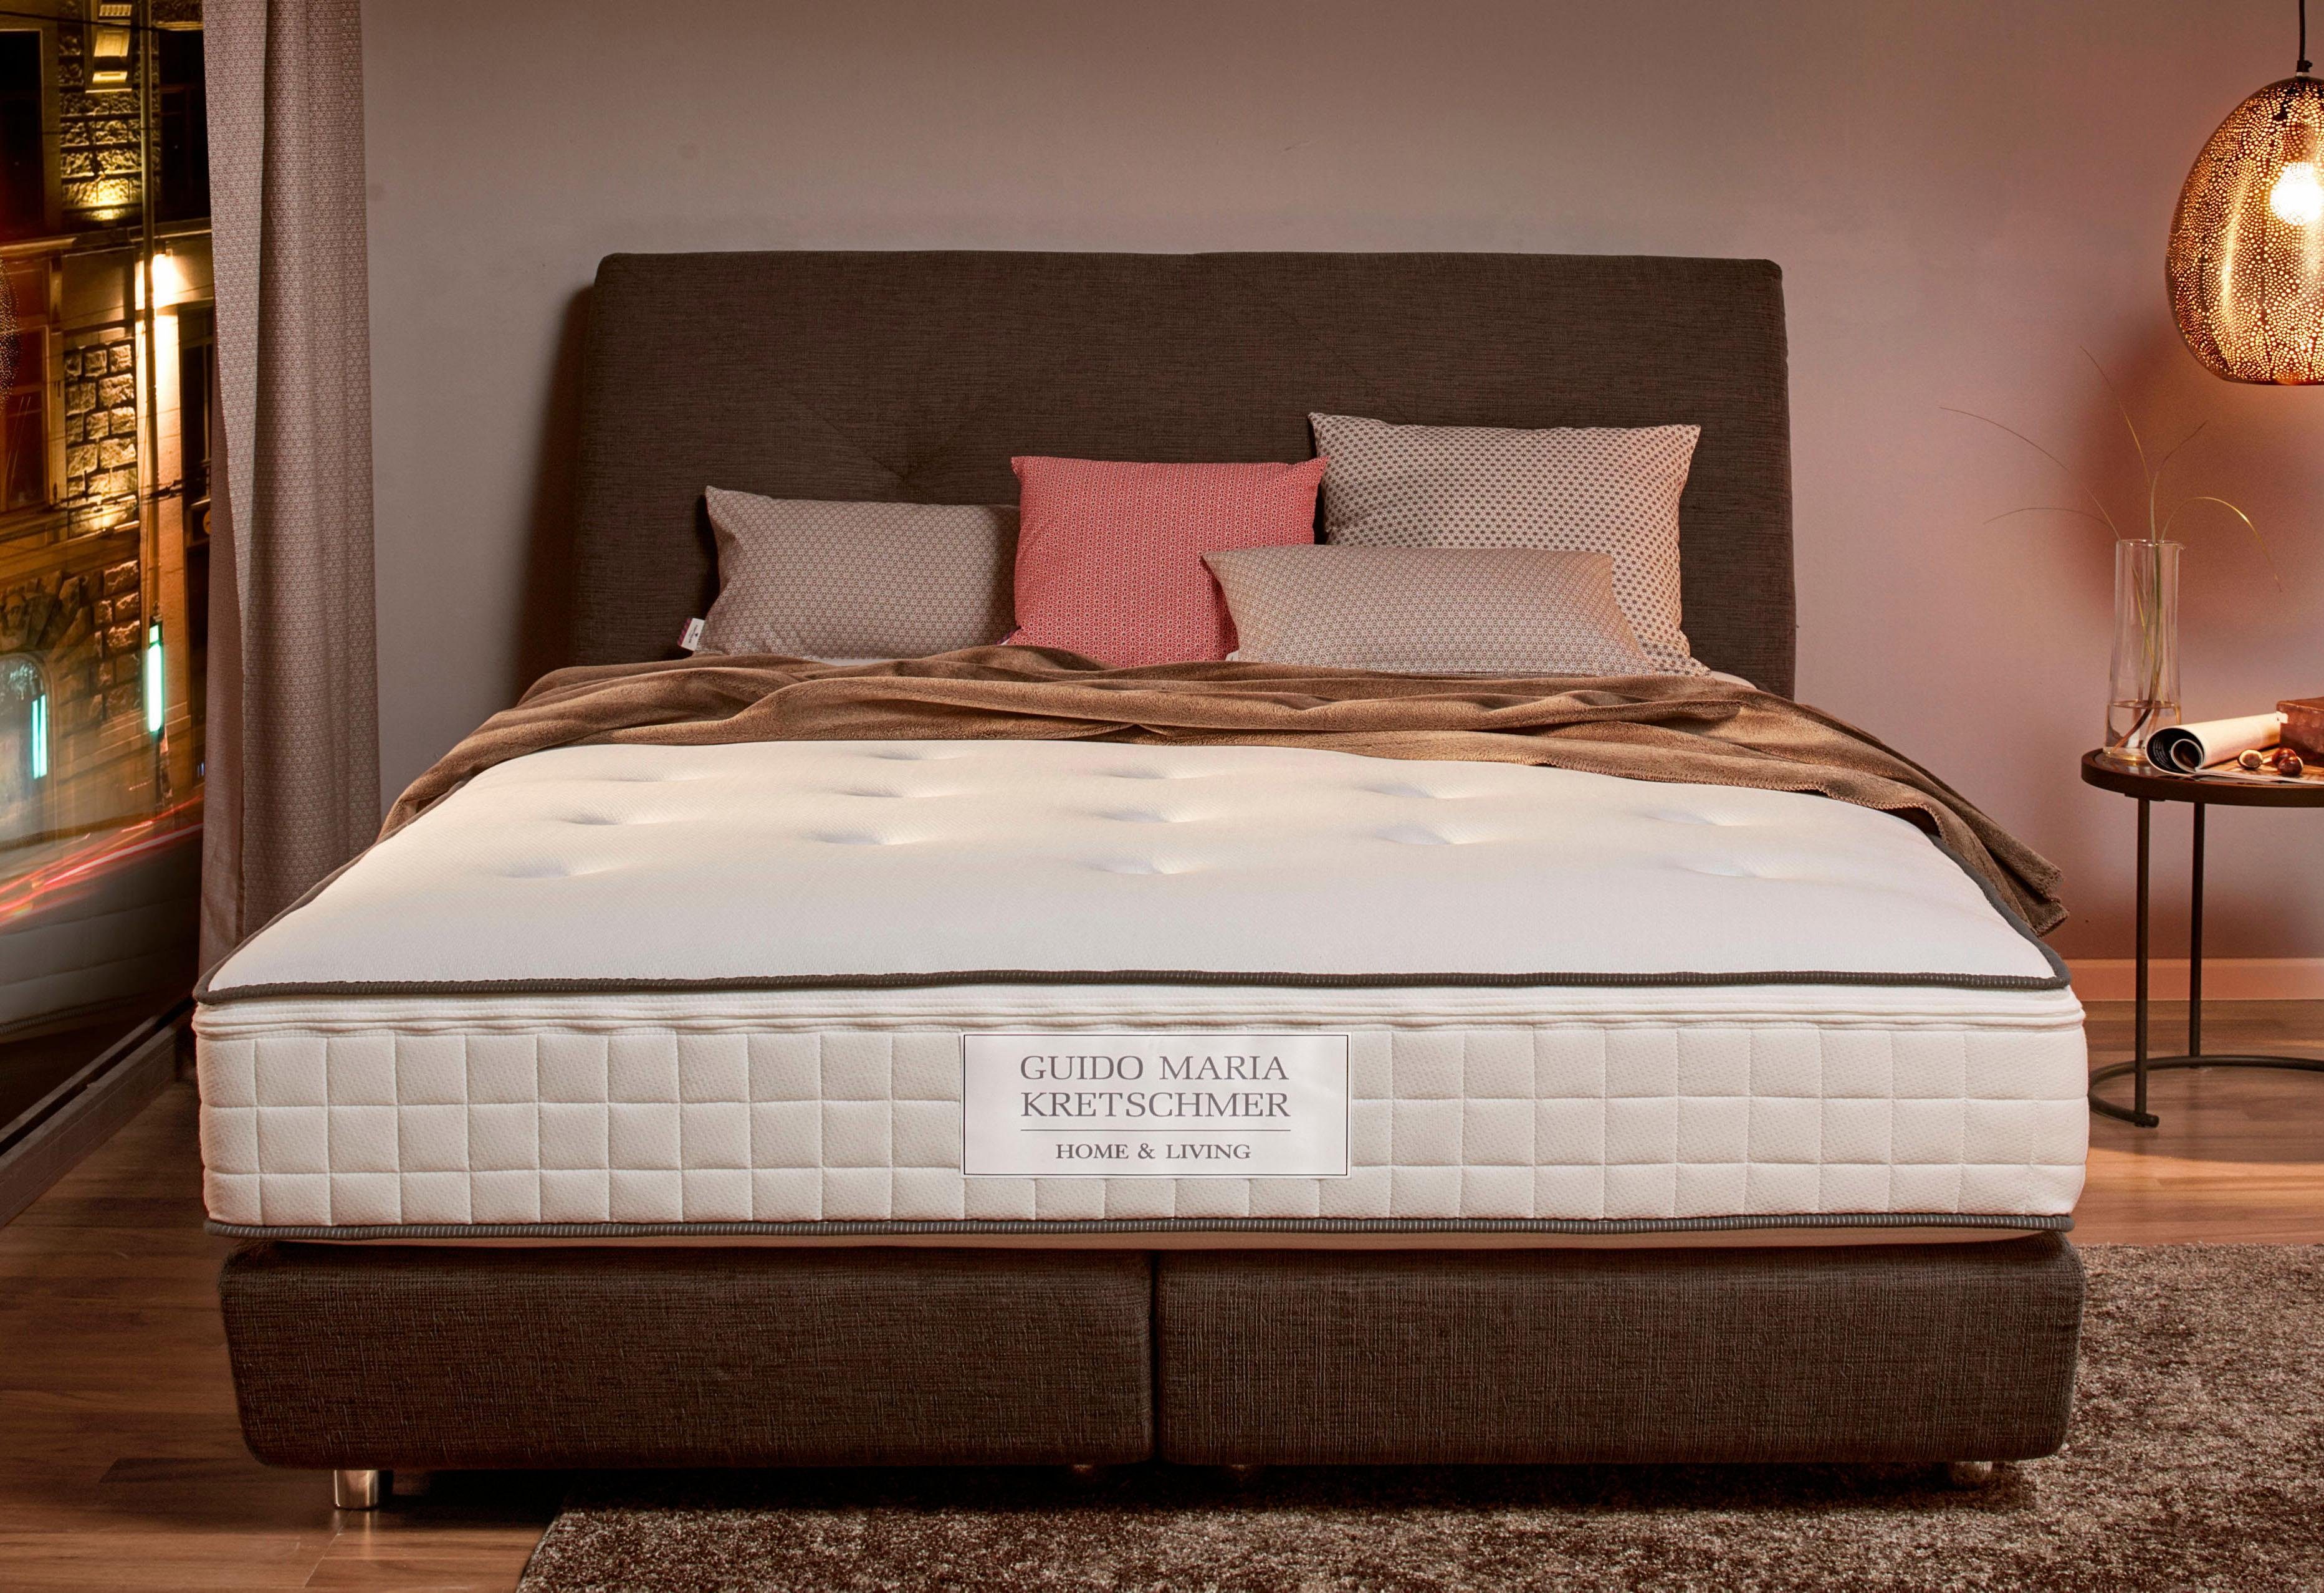 Guido Maria Kretschmer Home&Living Pocketveringsmatras Royal Scheerlijn 7-zones pocketvering, goede ventilatie, een matras met uitstekende eigenschappen voor superieur slaapcomfort